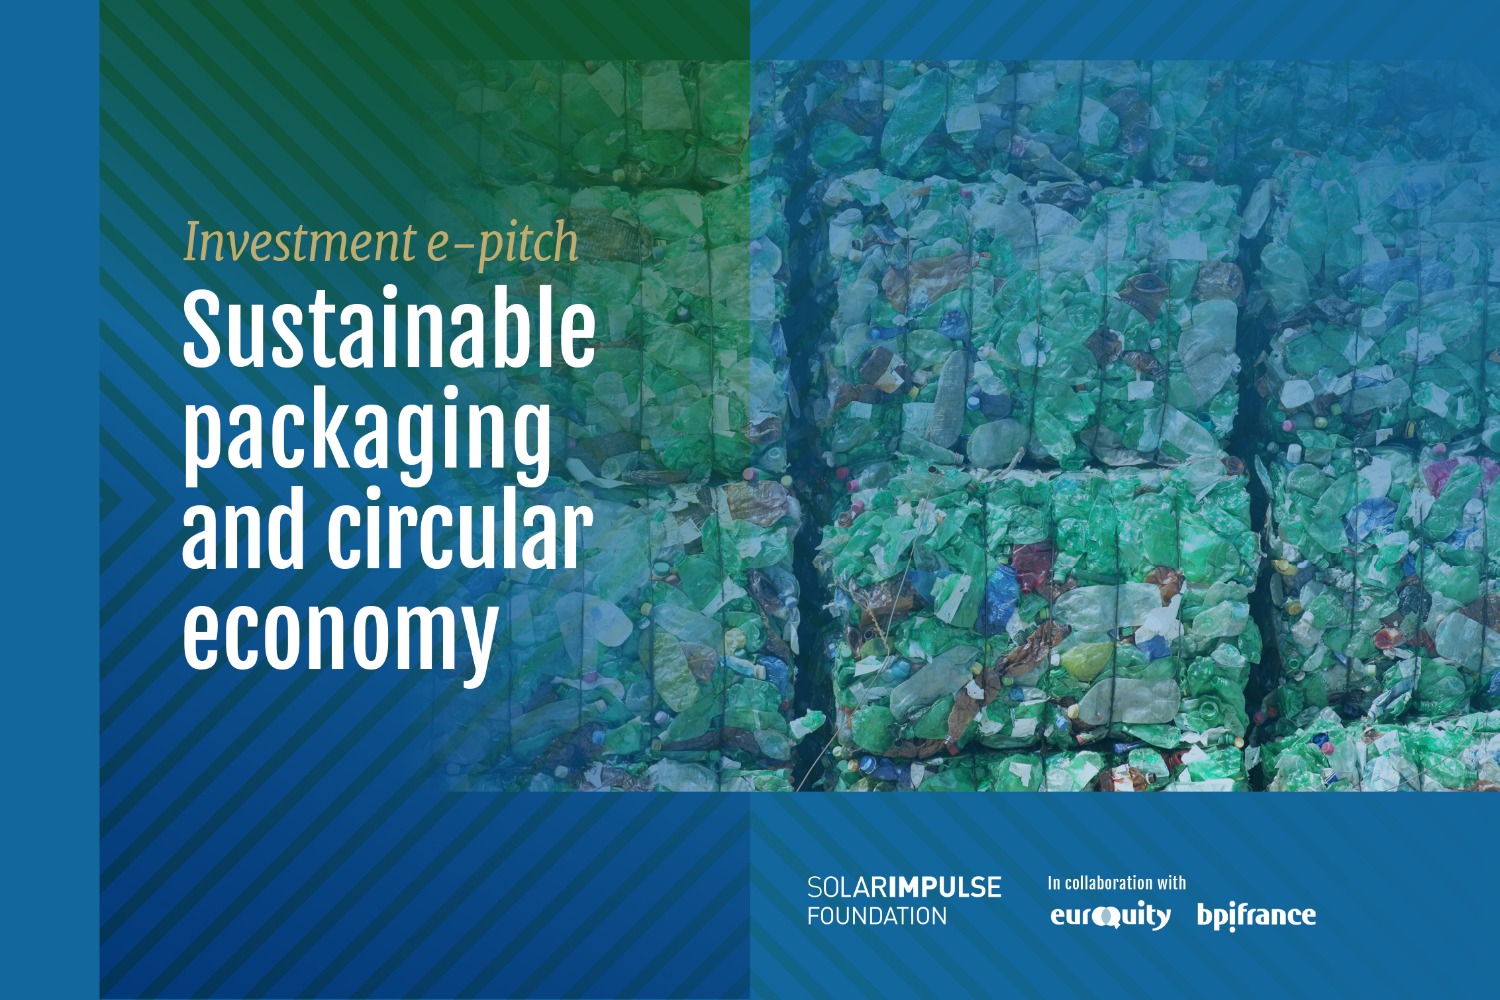 E-Pitch Solar Impulse Investment - "Imballaggi sostenibili ed economia circolare 